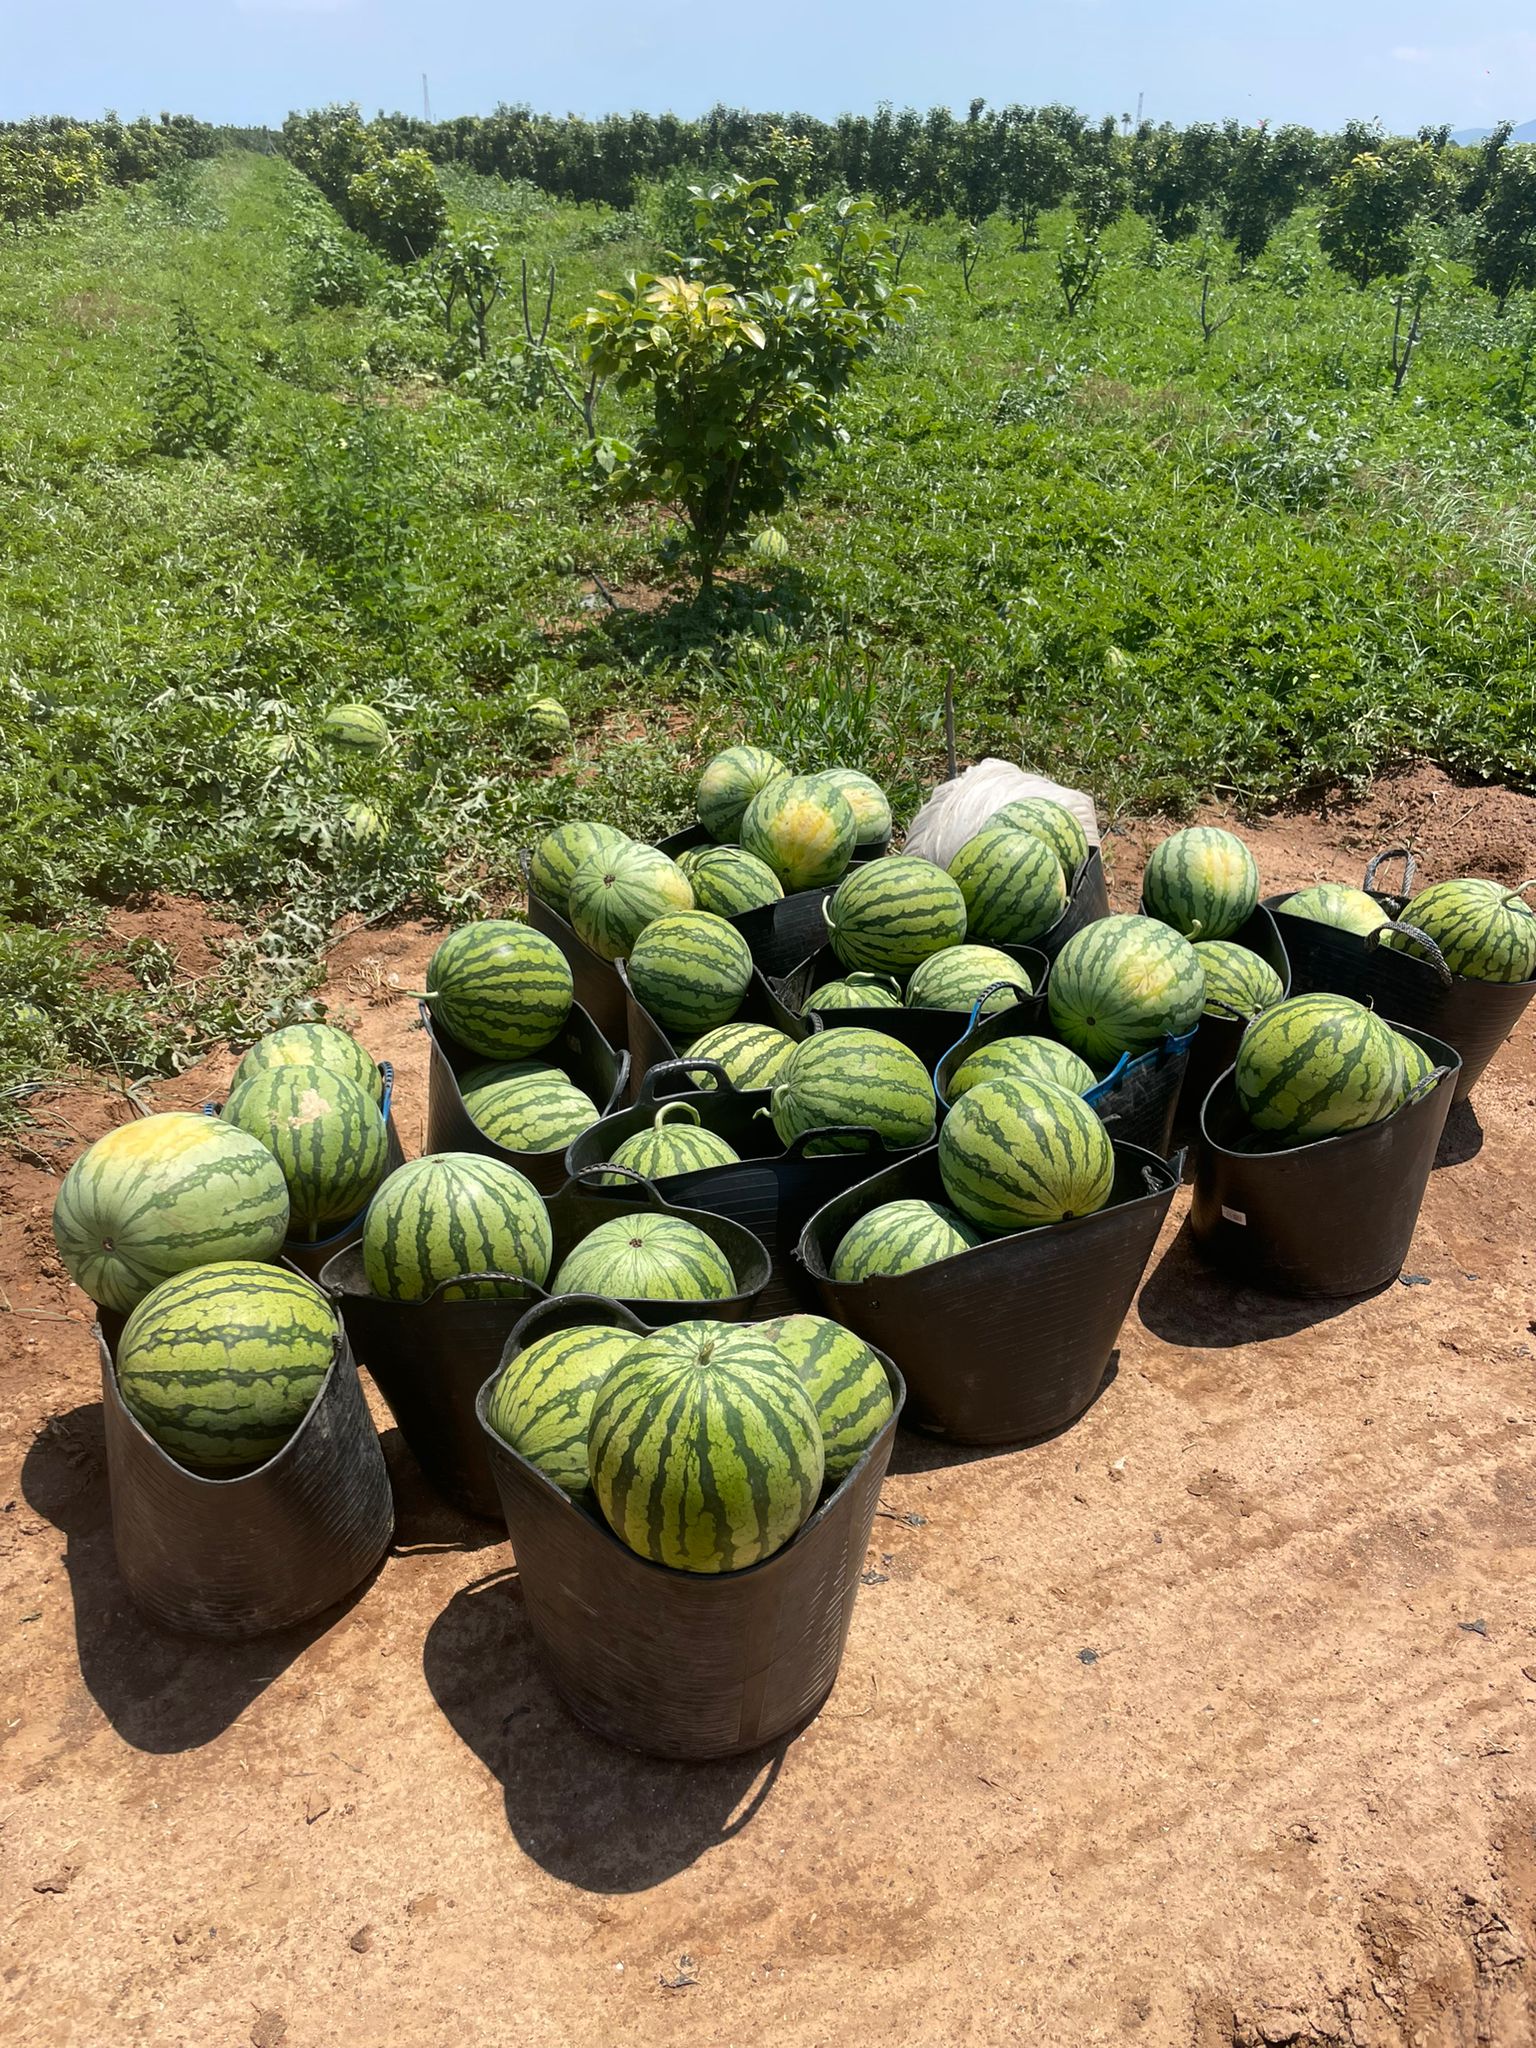 LA UNIÓ denuncia ja els primers robatoris de collita de melons d’Alger sense iniciar-se encara la campanya de recol·lecció